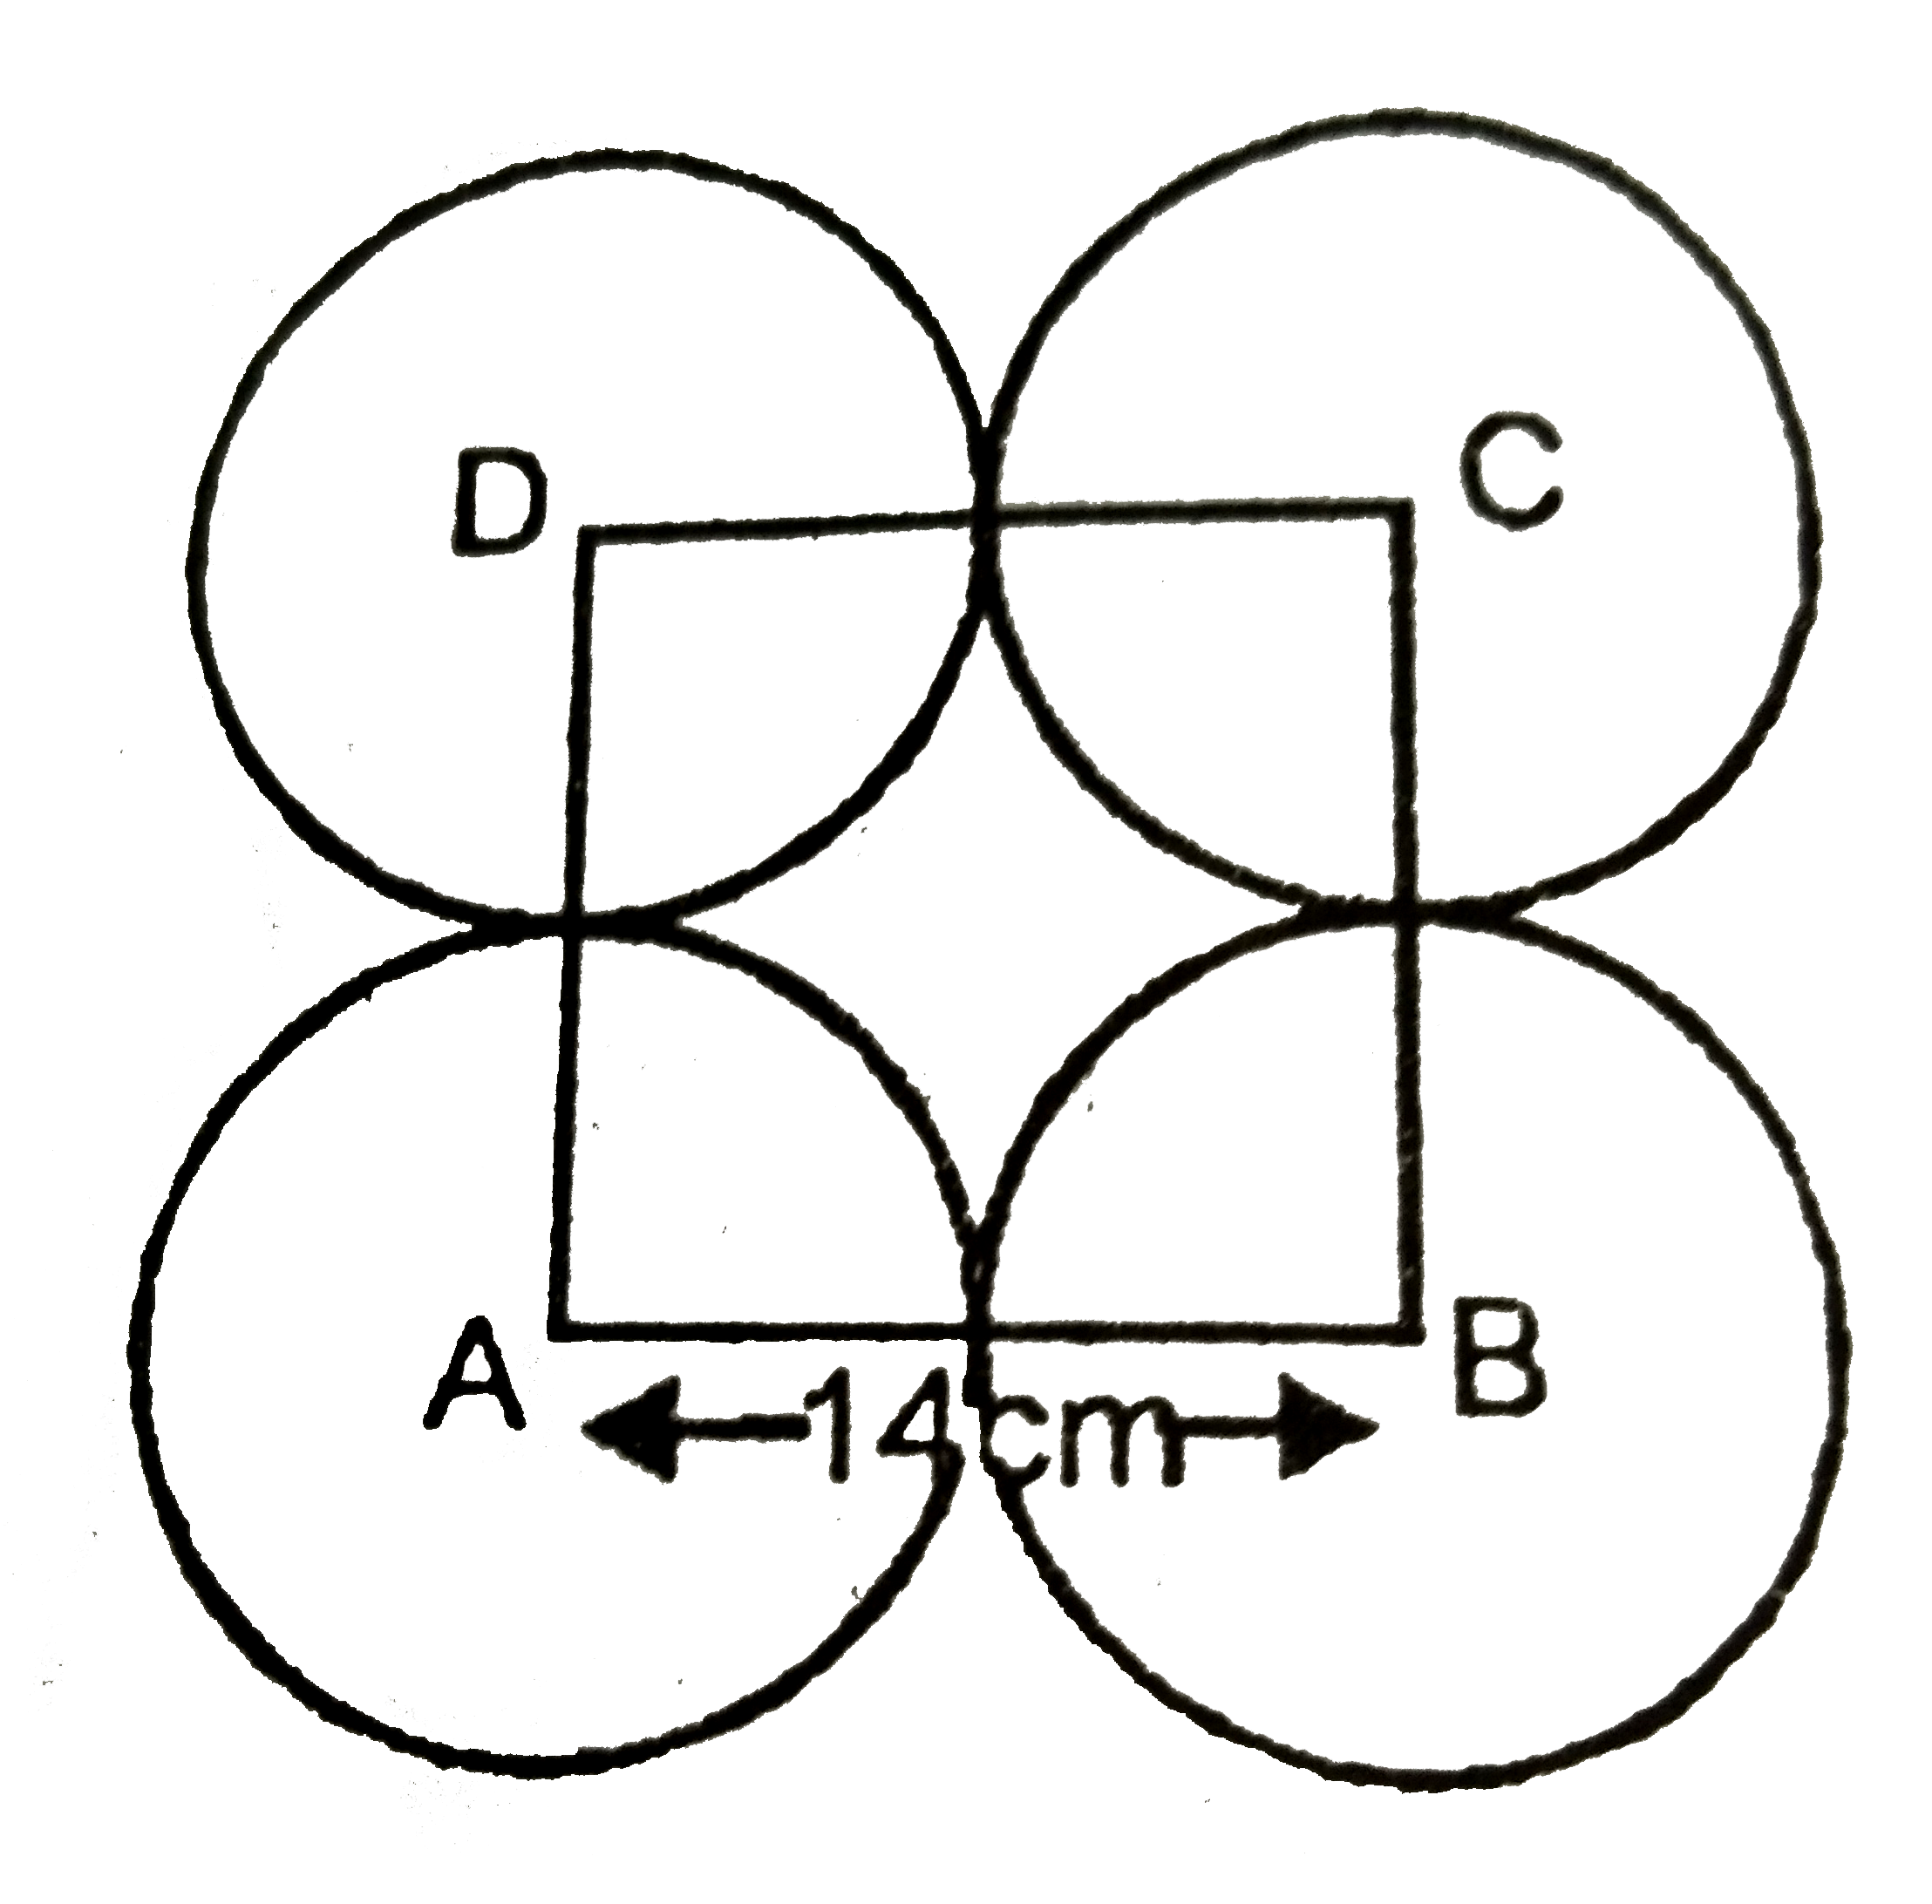 आकृति  में  ABCD  भुजा  14 cm वाला एक  वर्ग  है।   A, B, C  और D  को  केंद्र मान  कर  चार वृत्त  इस प्रकार  खींचे  गए है कि प्रत्येक  वृत्त  तीन शेष वृत्त  में  से दो वृत्तों  को बाह्य रूप  से स्पर्श करती है। छायांकित भाग  का क्षेत्रफल  ज्ञात  कीजिये।